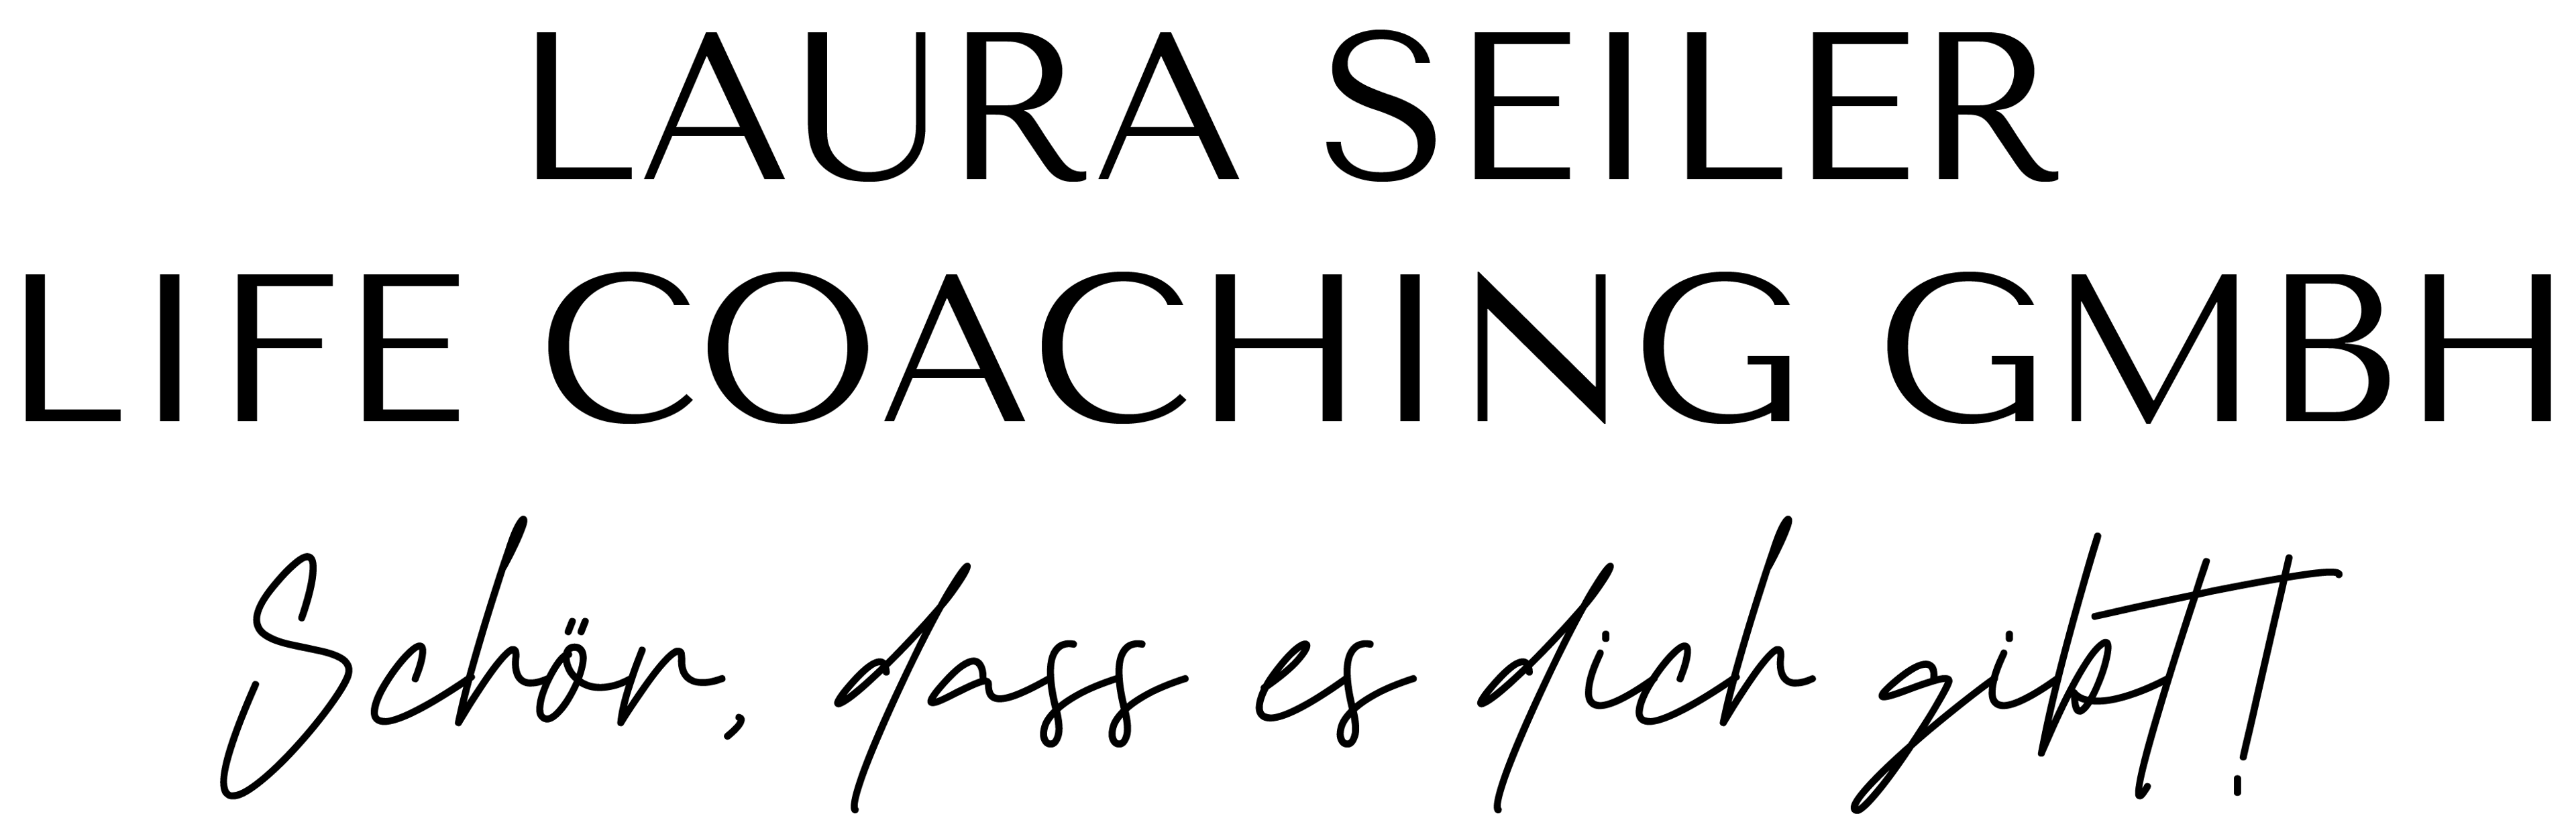 Laura Seiler logo